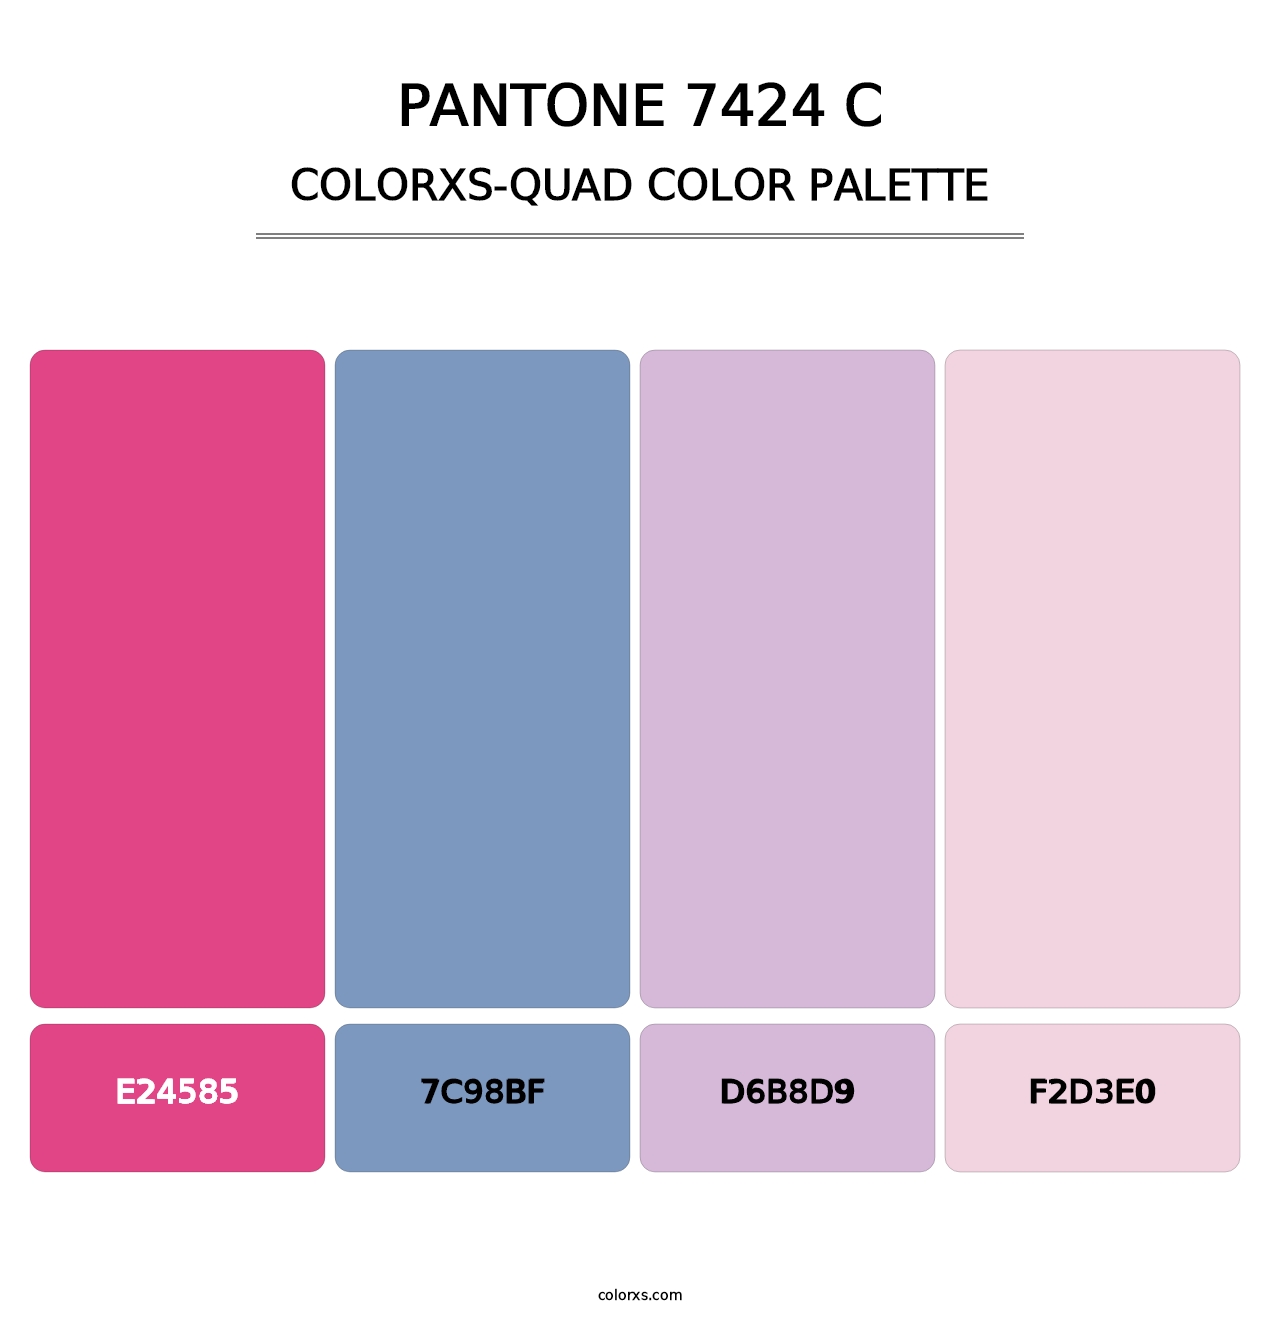 PANTONE 7424 C - Colorxs Quad Palette